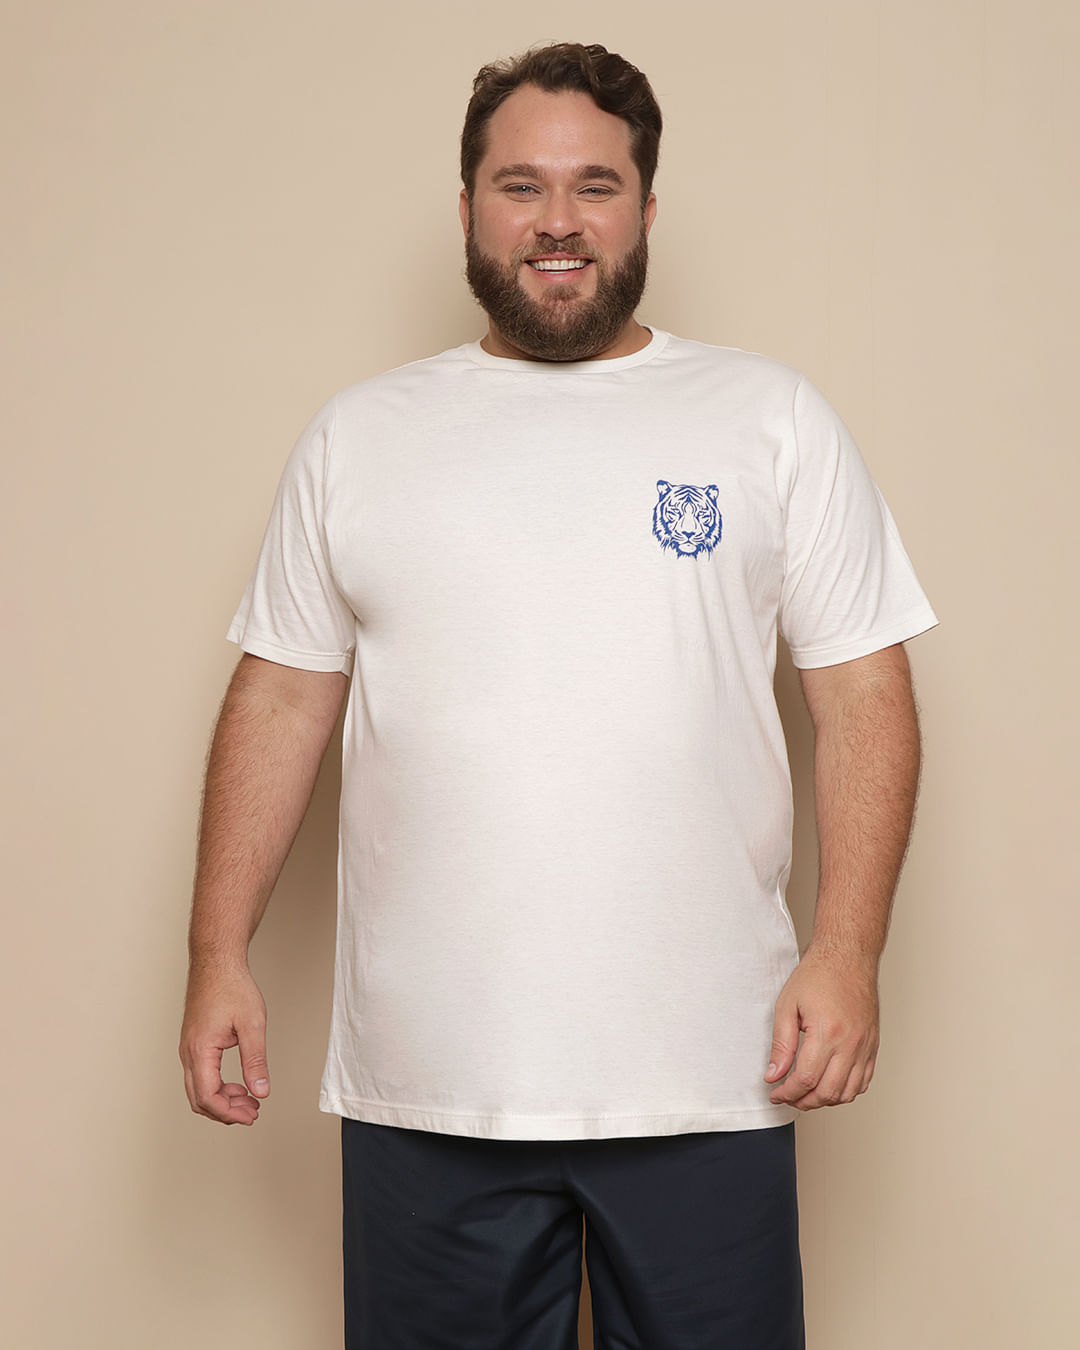 Camiseta Plus Size Masculina Athletic Manga Curta Off White